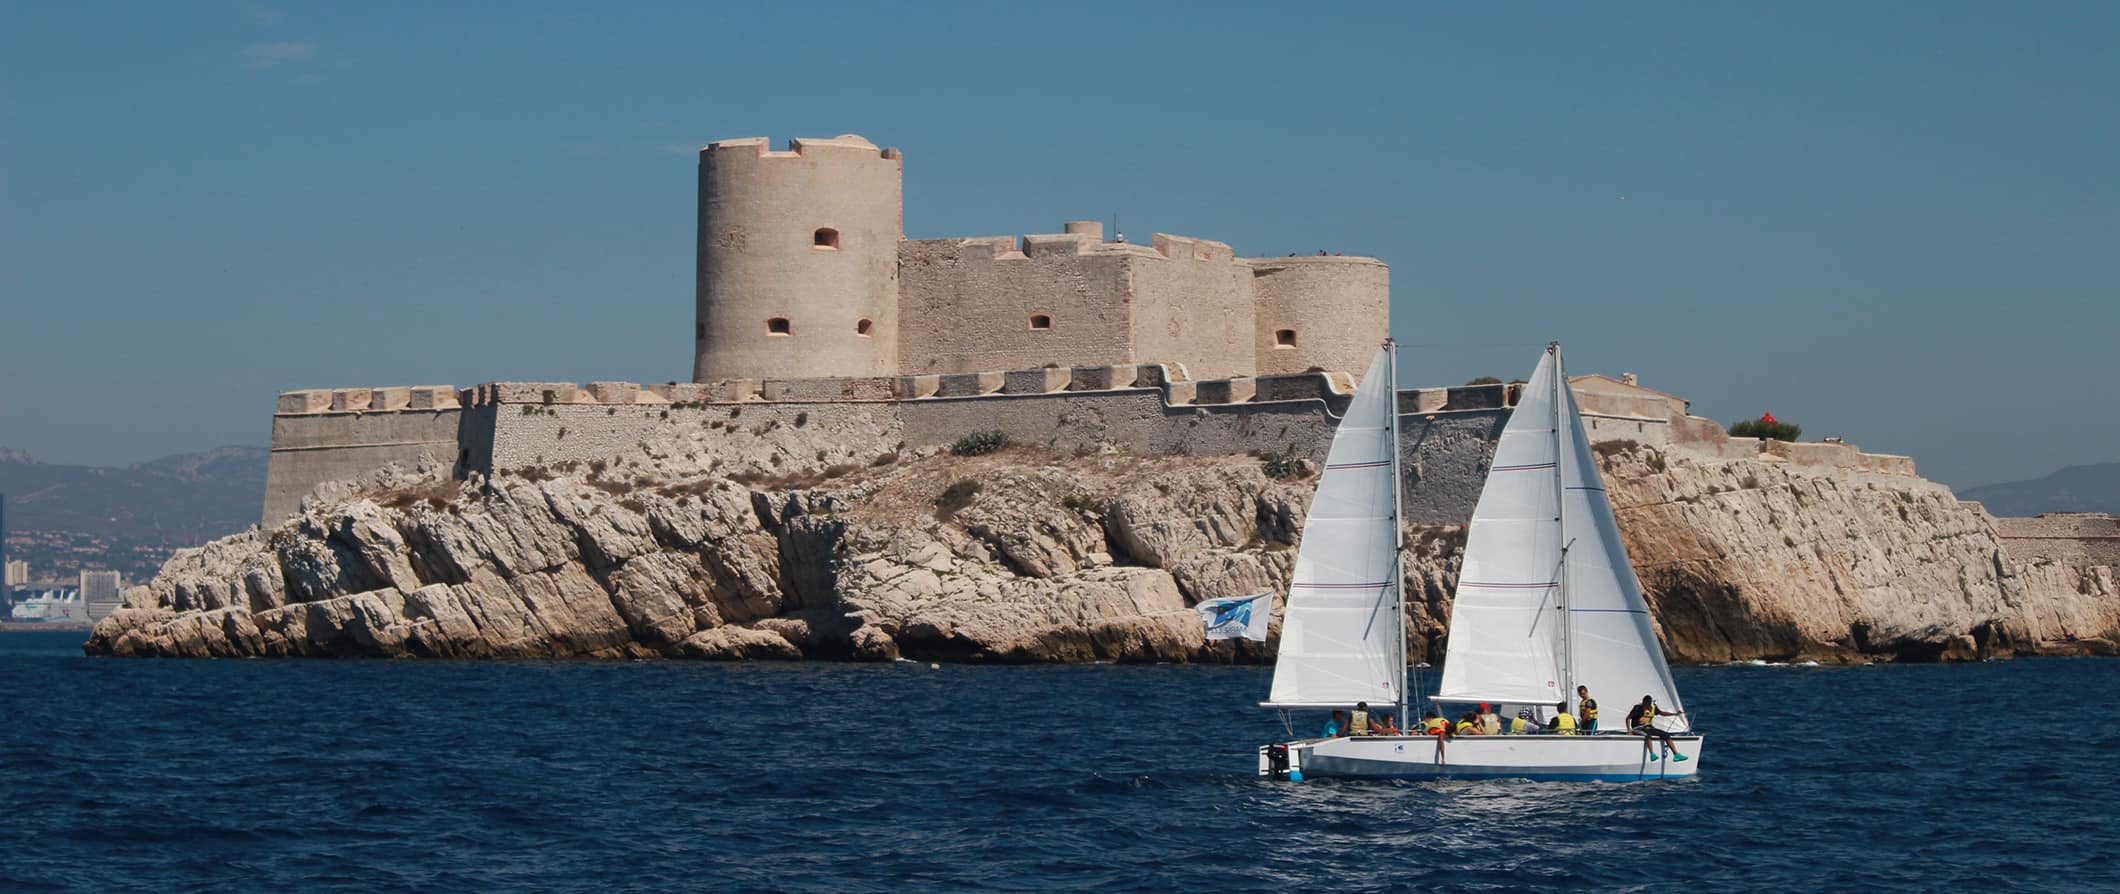 Um pequeno veleiro com passageiros navega em frente à fortaleza do Chateau d'H Se, localizado na costa de Marselha.